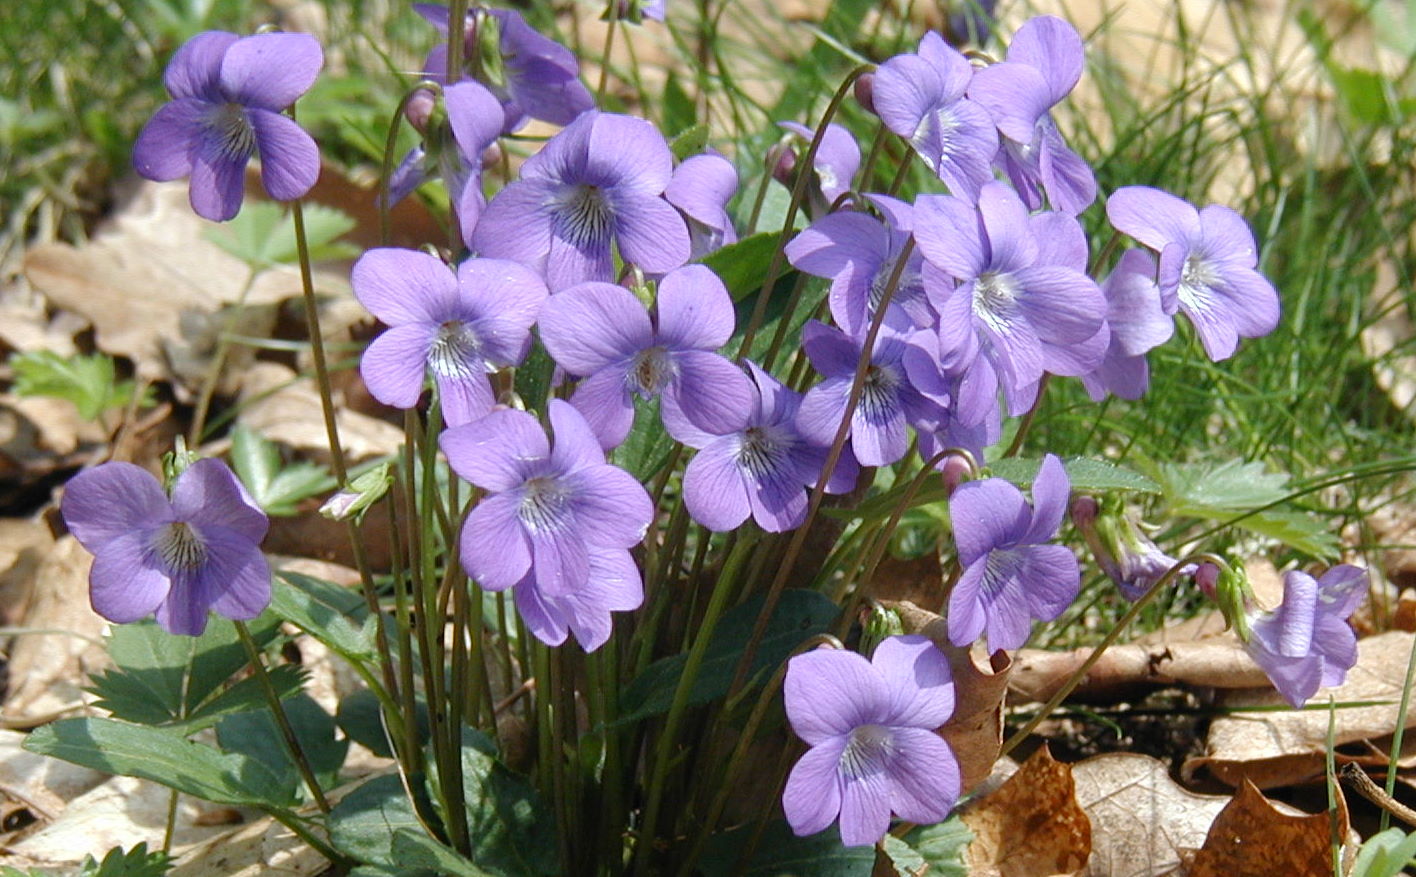 Northern Downy Violet in Two Week Bloom – wildeherb.com